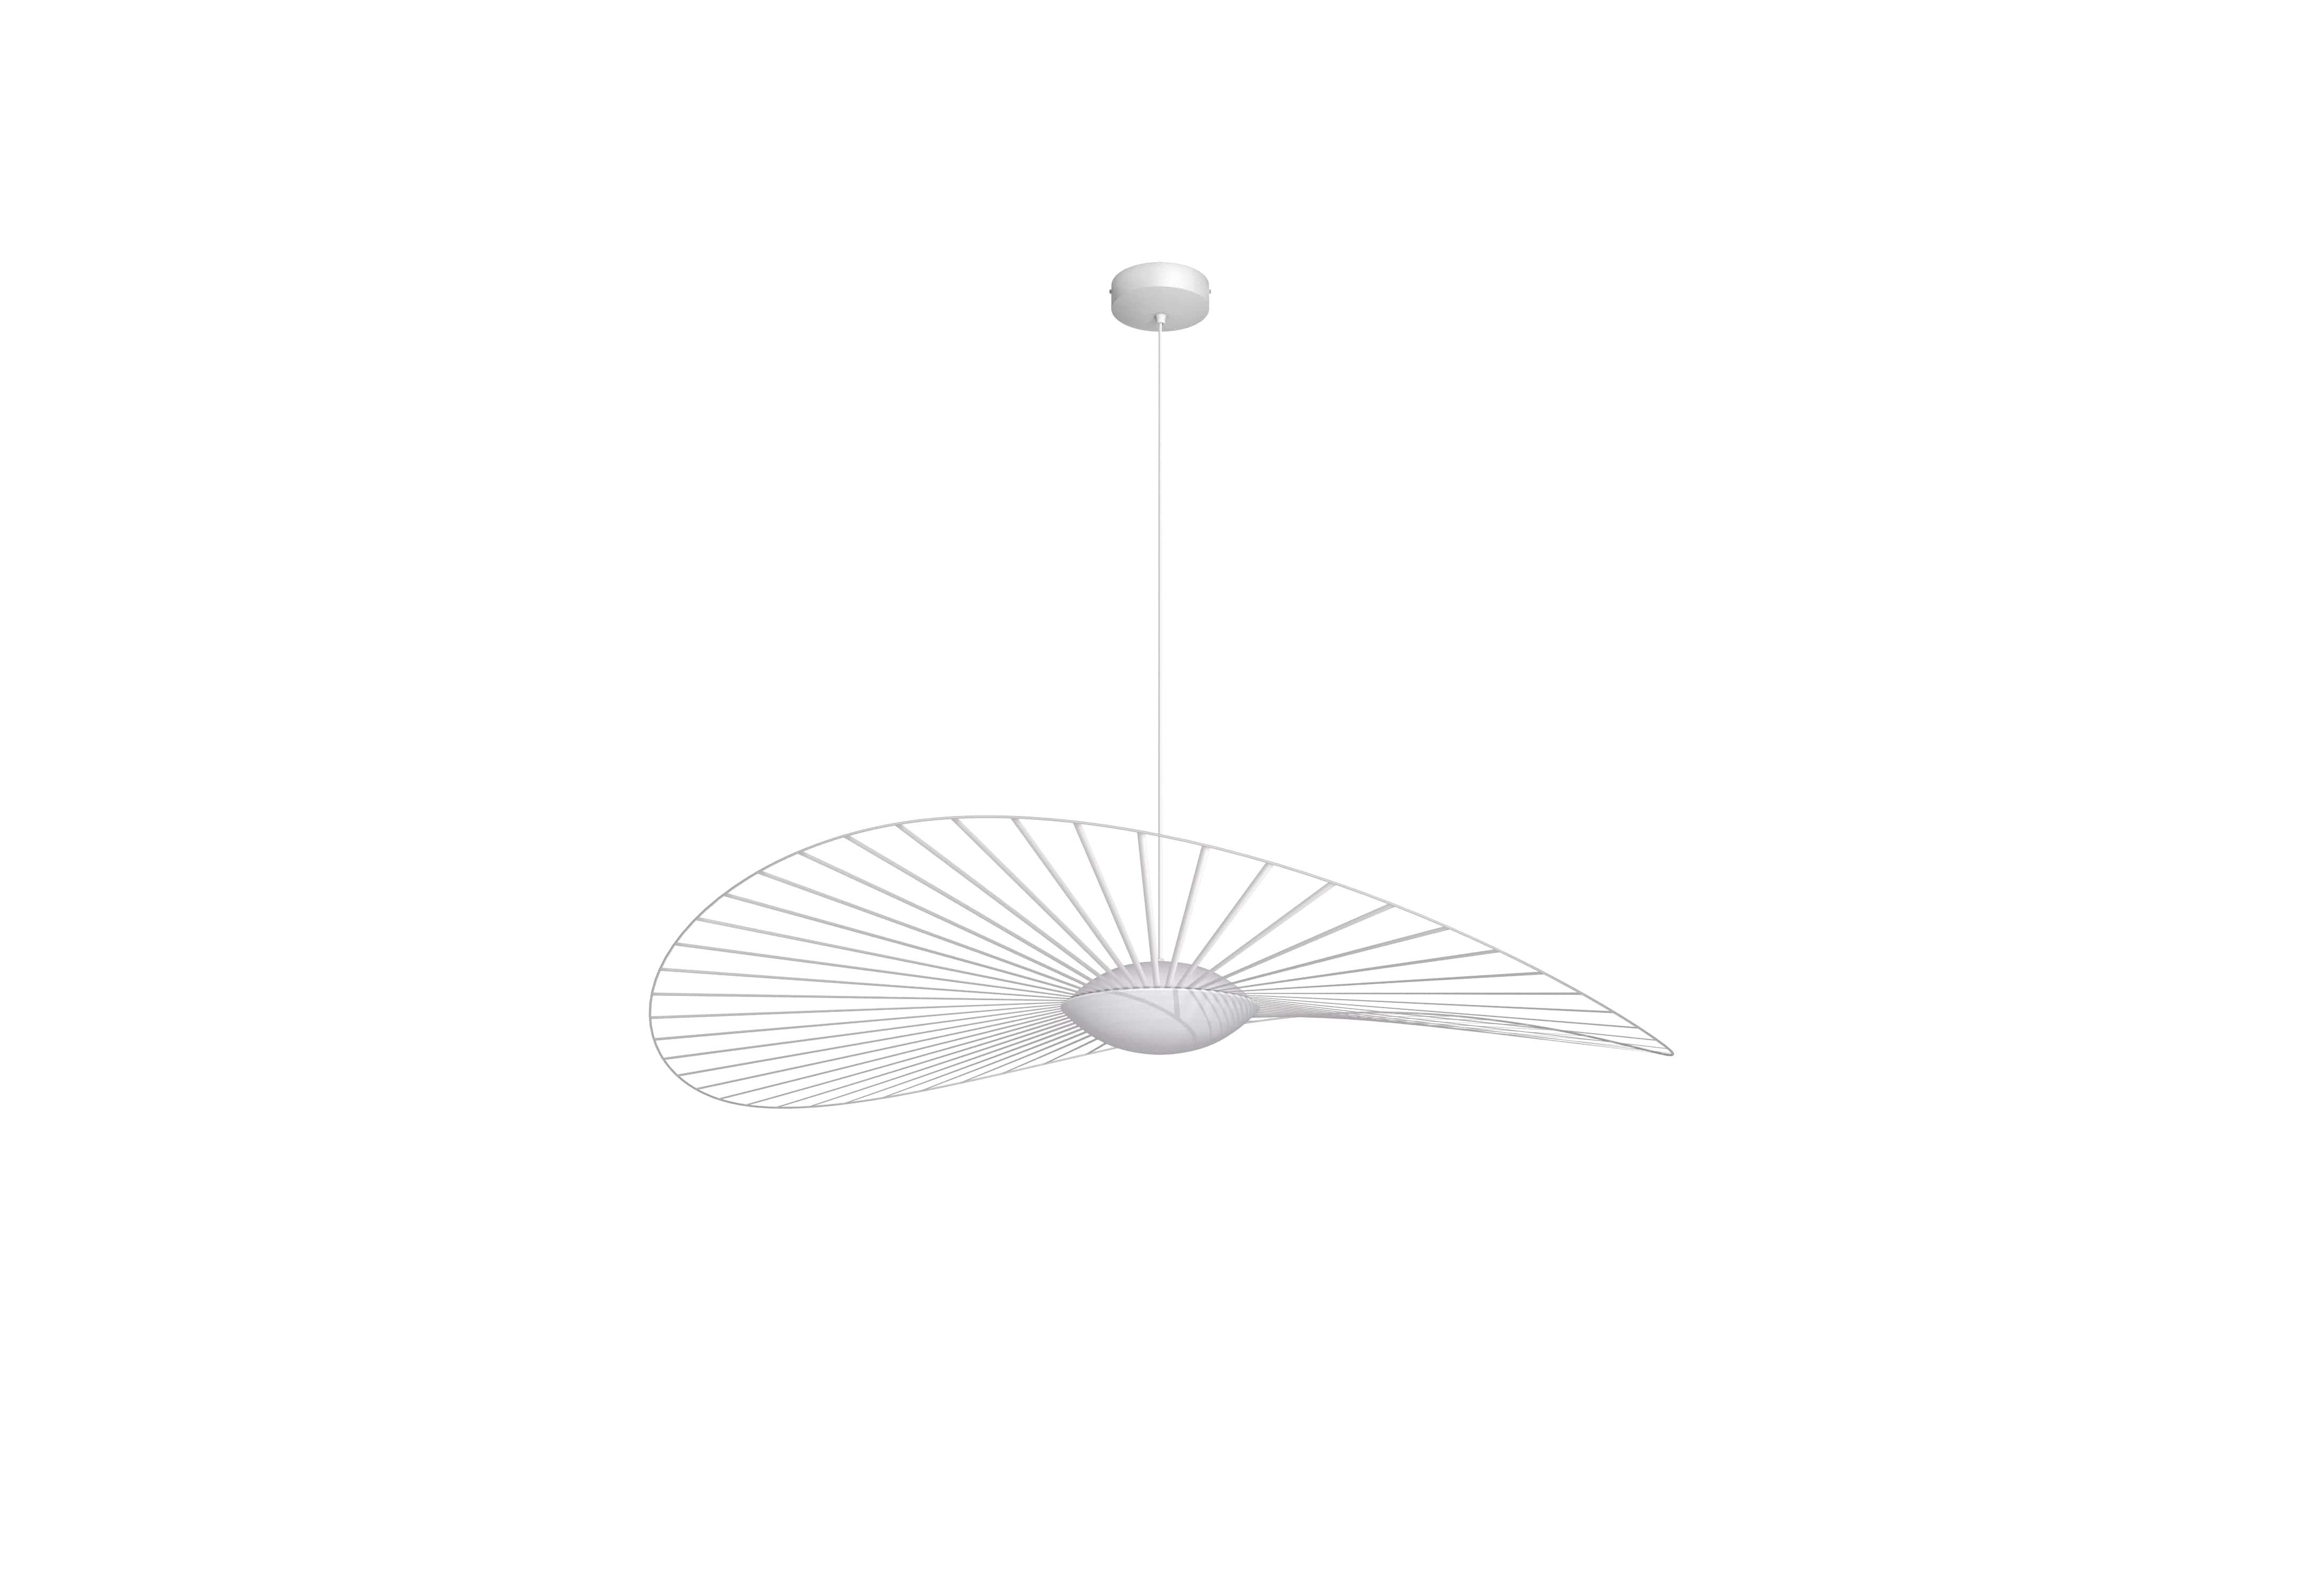 Petite Friture Medium Vertigo Nova Suspension Light in White by Constance Guisset, 2020

Vertigo Nova est une collection hautement technique qui ne fait aucun compromis sur l'élégance poétique emblématique du Design/One. Une ligne qui se décline